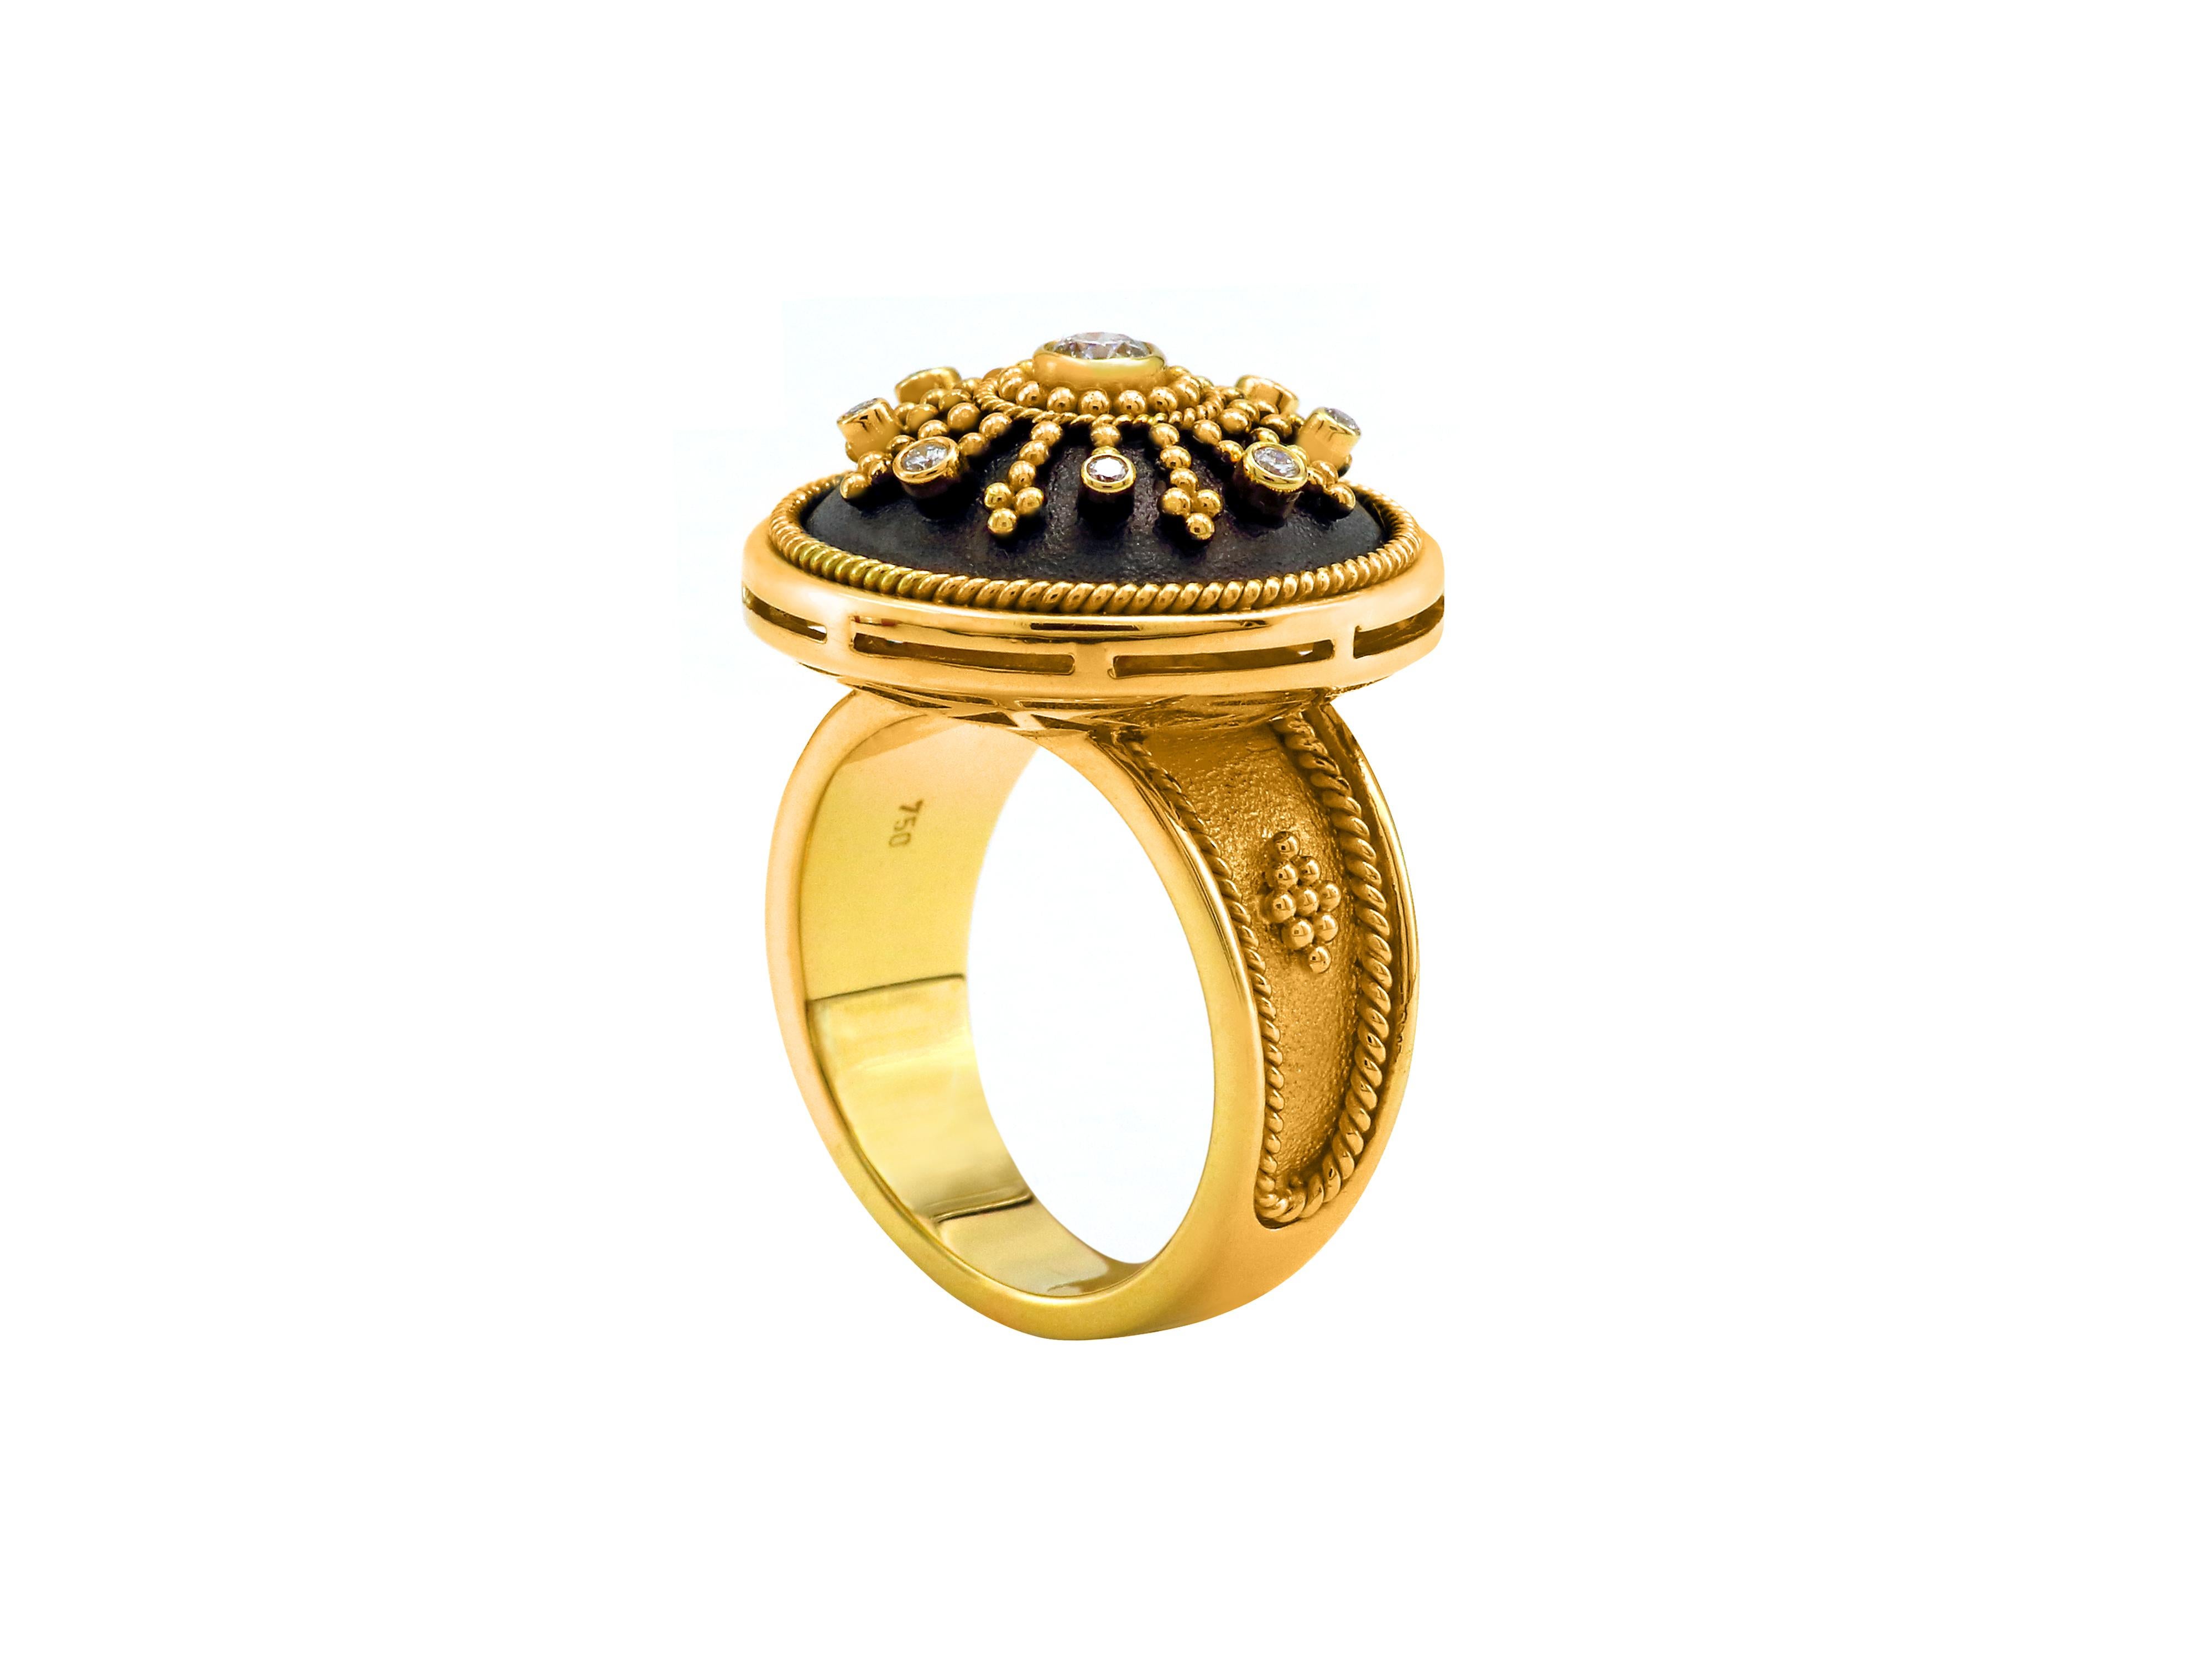 Bague dôme de style byzantin de la Collection Noir réalisée à la main par Dimos en or jaune 18 carats et sertie de diamants brillants naturels de 0,27 carat. 
Des filigranes faits à la main et une technique de granulation élevée, même dans l'anneau,